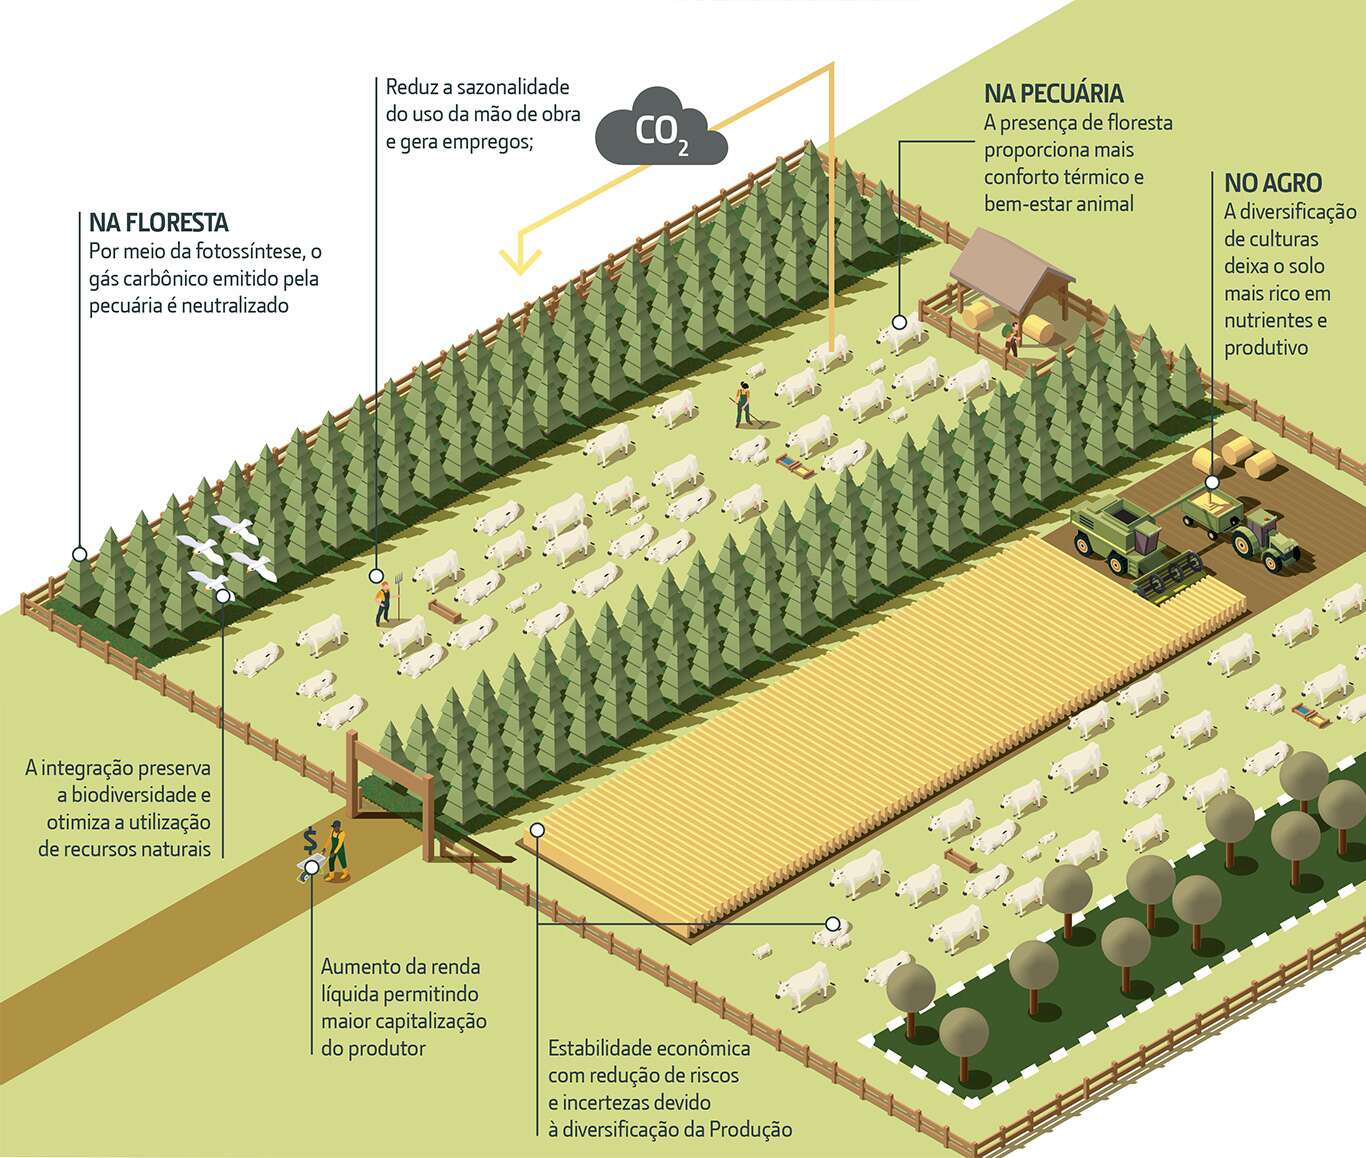 Integração Lavoura-Pecuária-Floresta (ILPF)